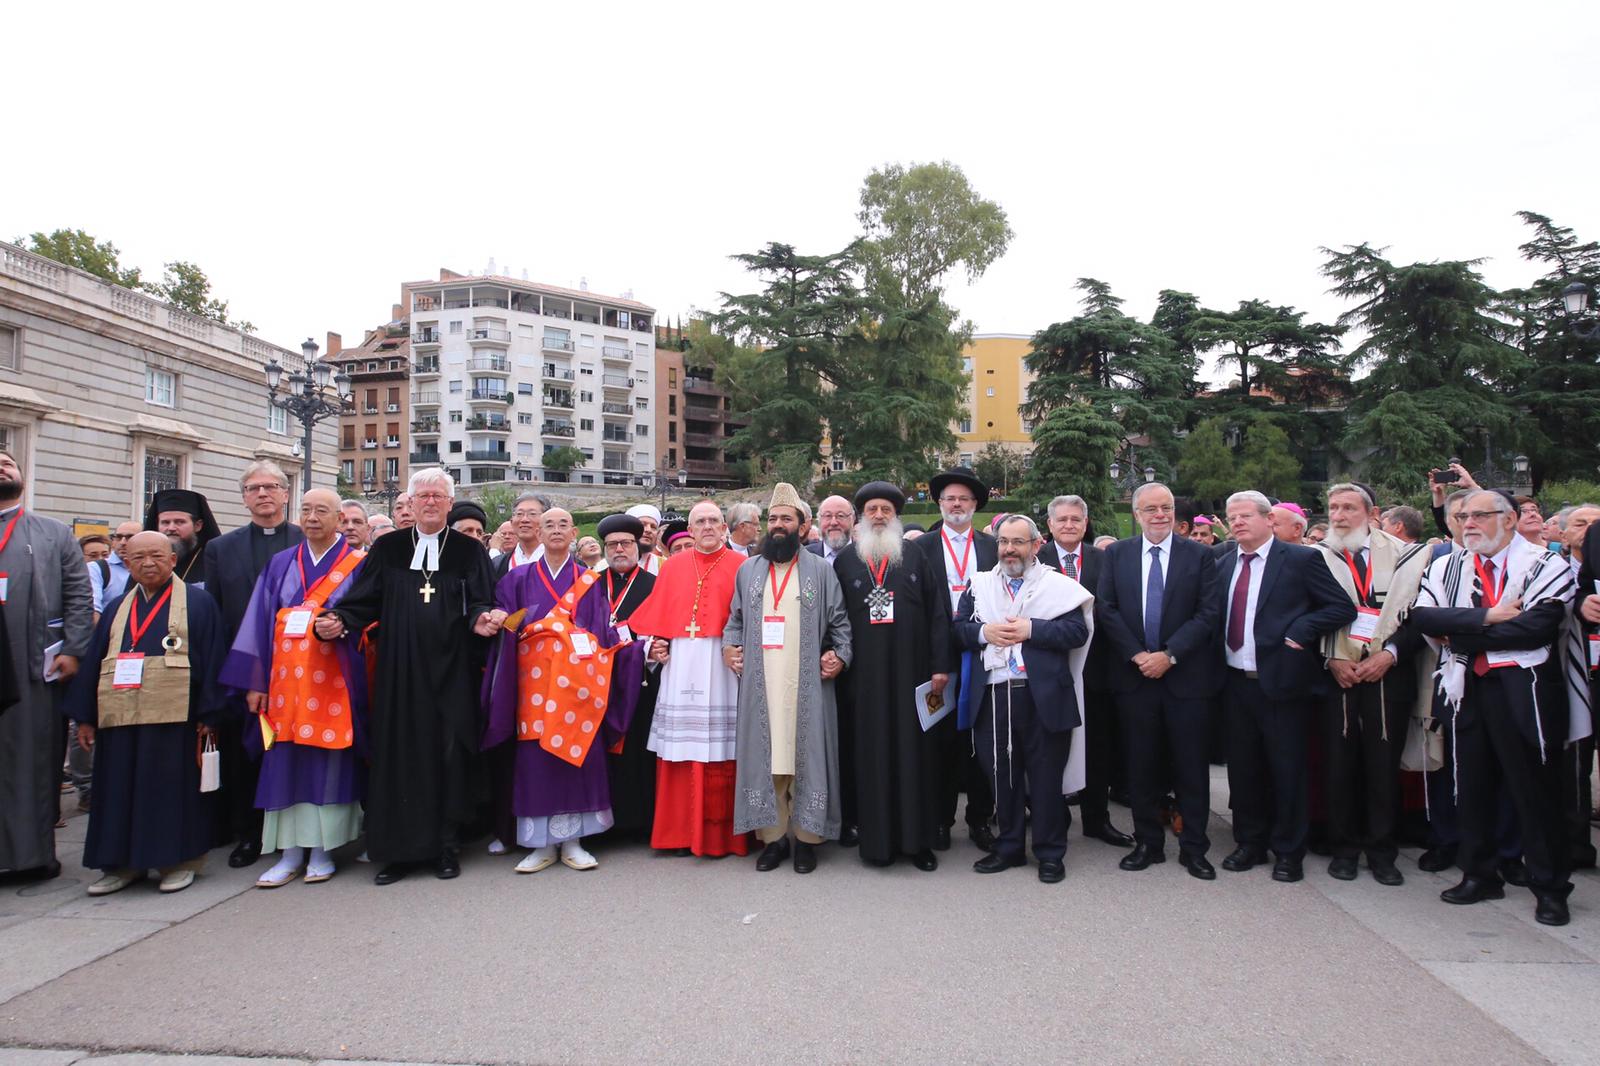 Interreligieuze samenkomst voor de vrede in Madrid